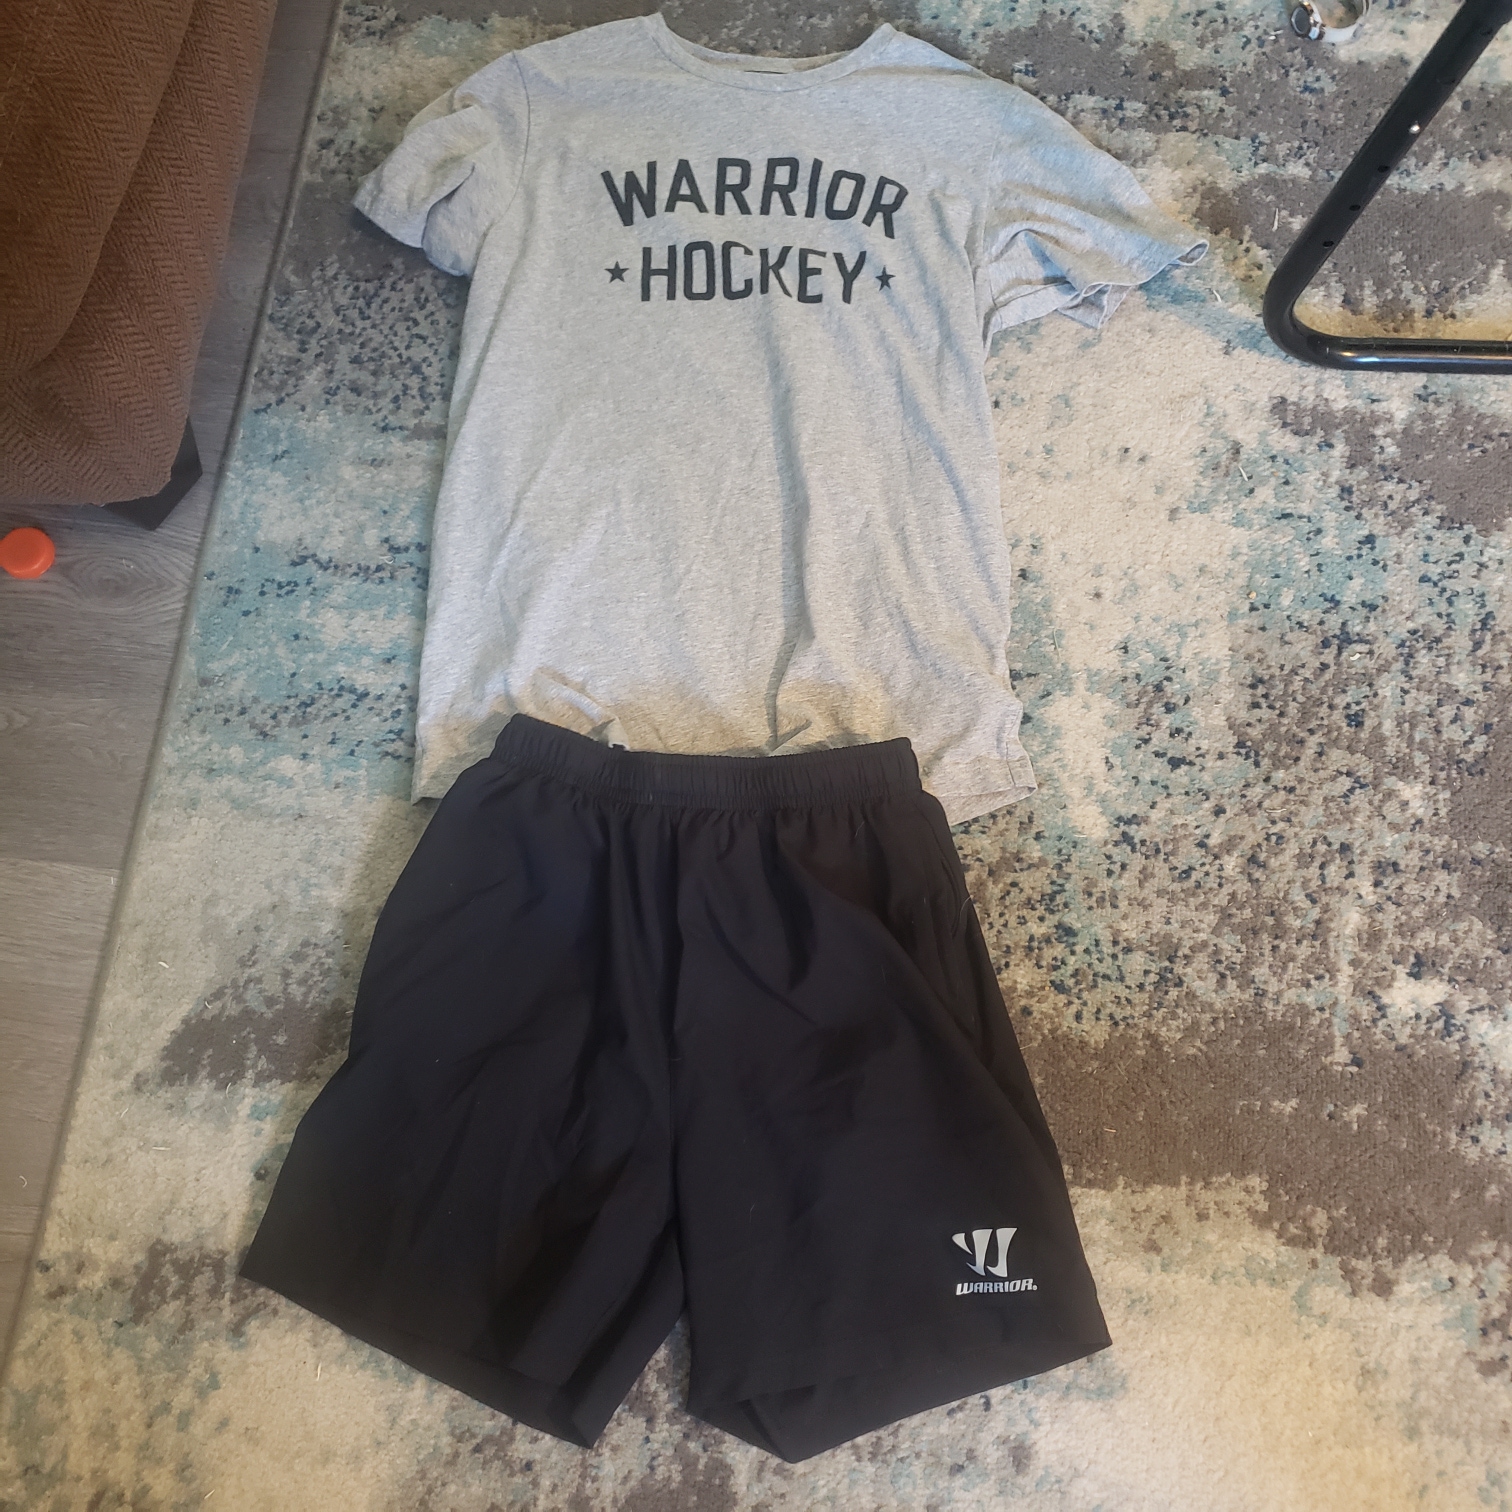 Warrior Hockey Shirt (L) and Shorts (M)